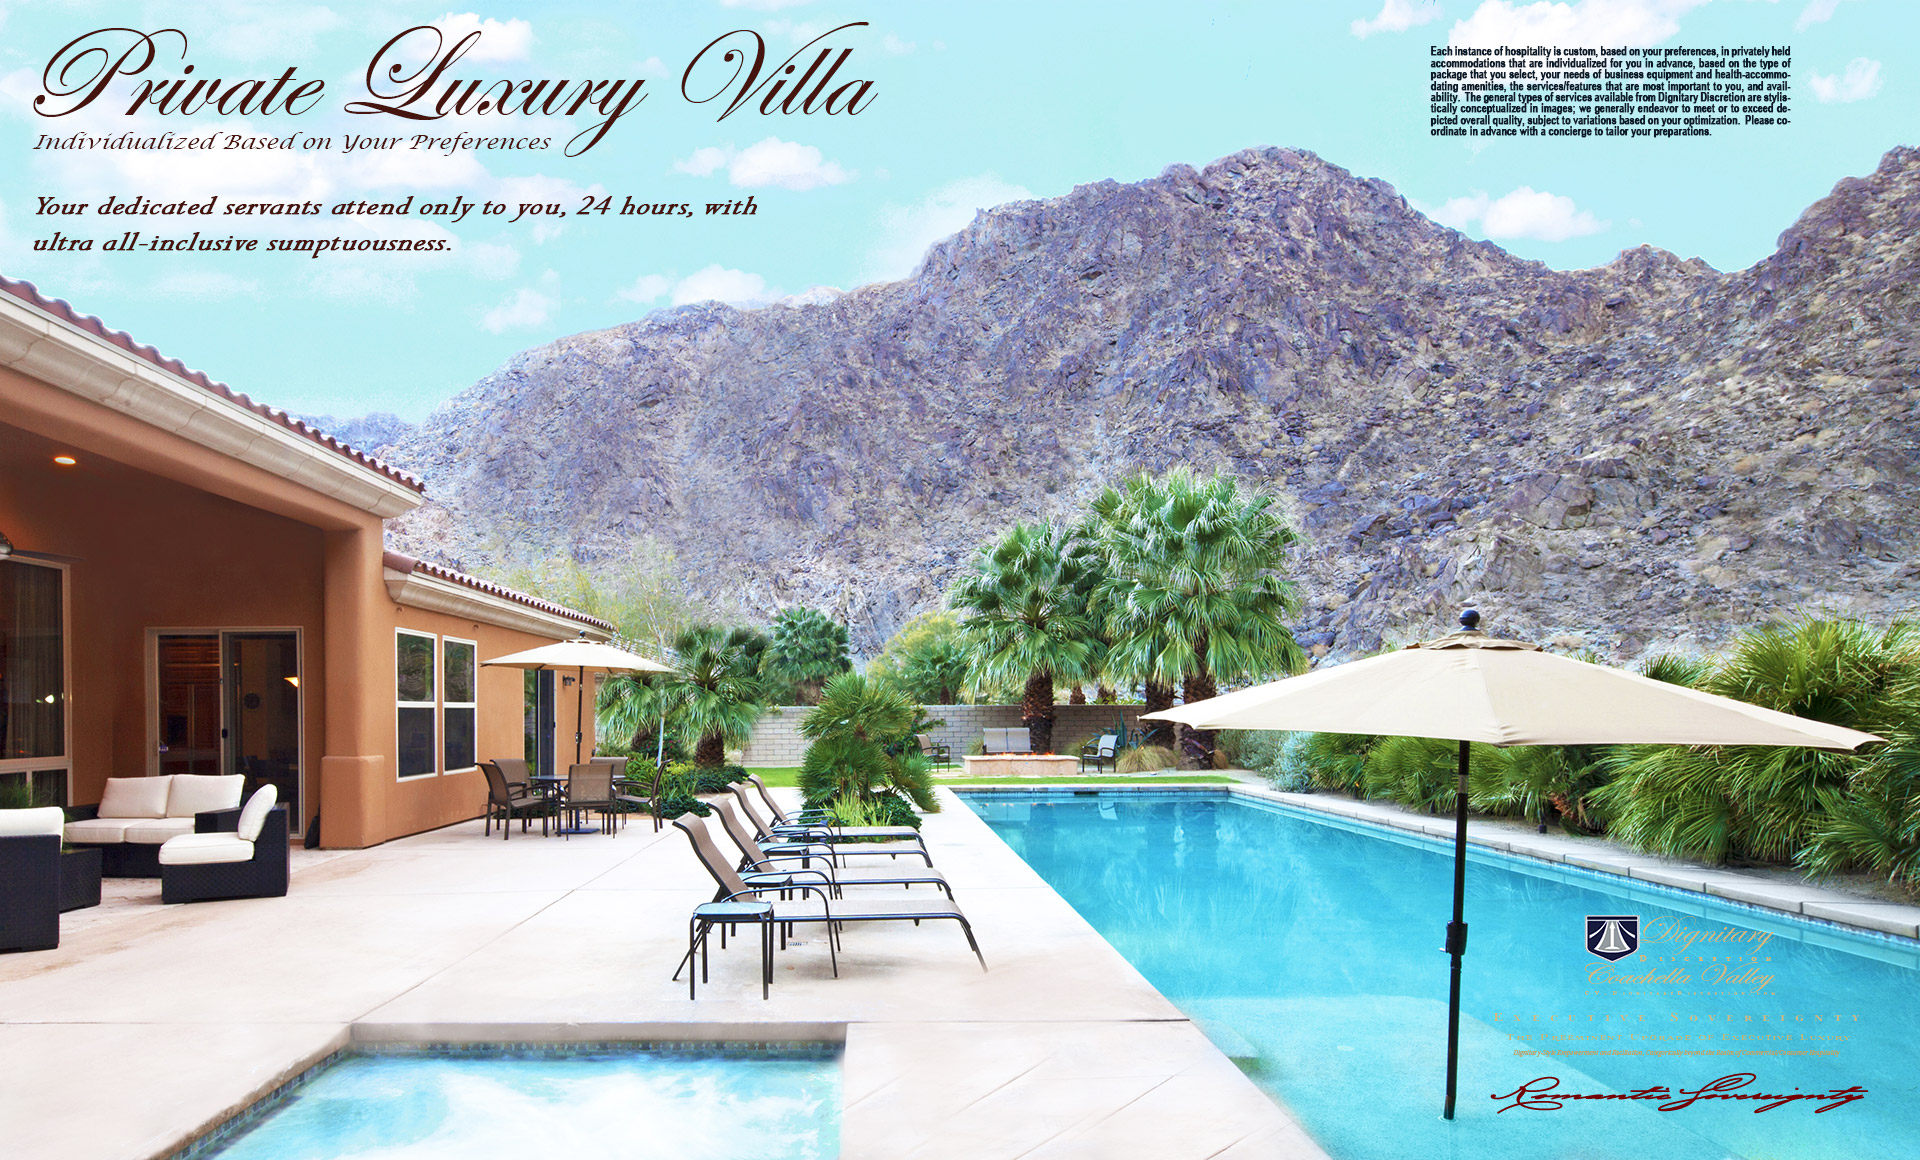 Private Pool Five Star Hotel Coachella Valley